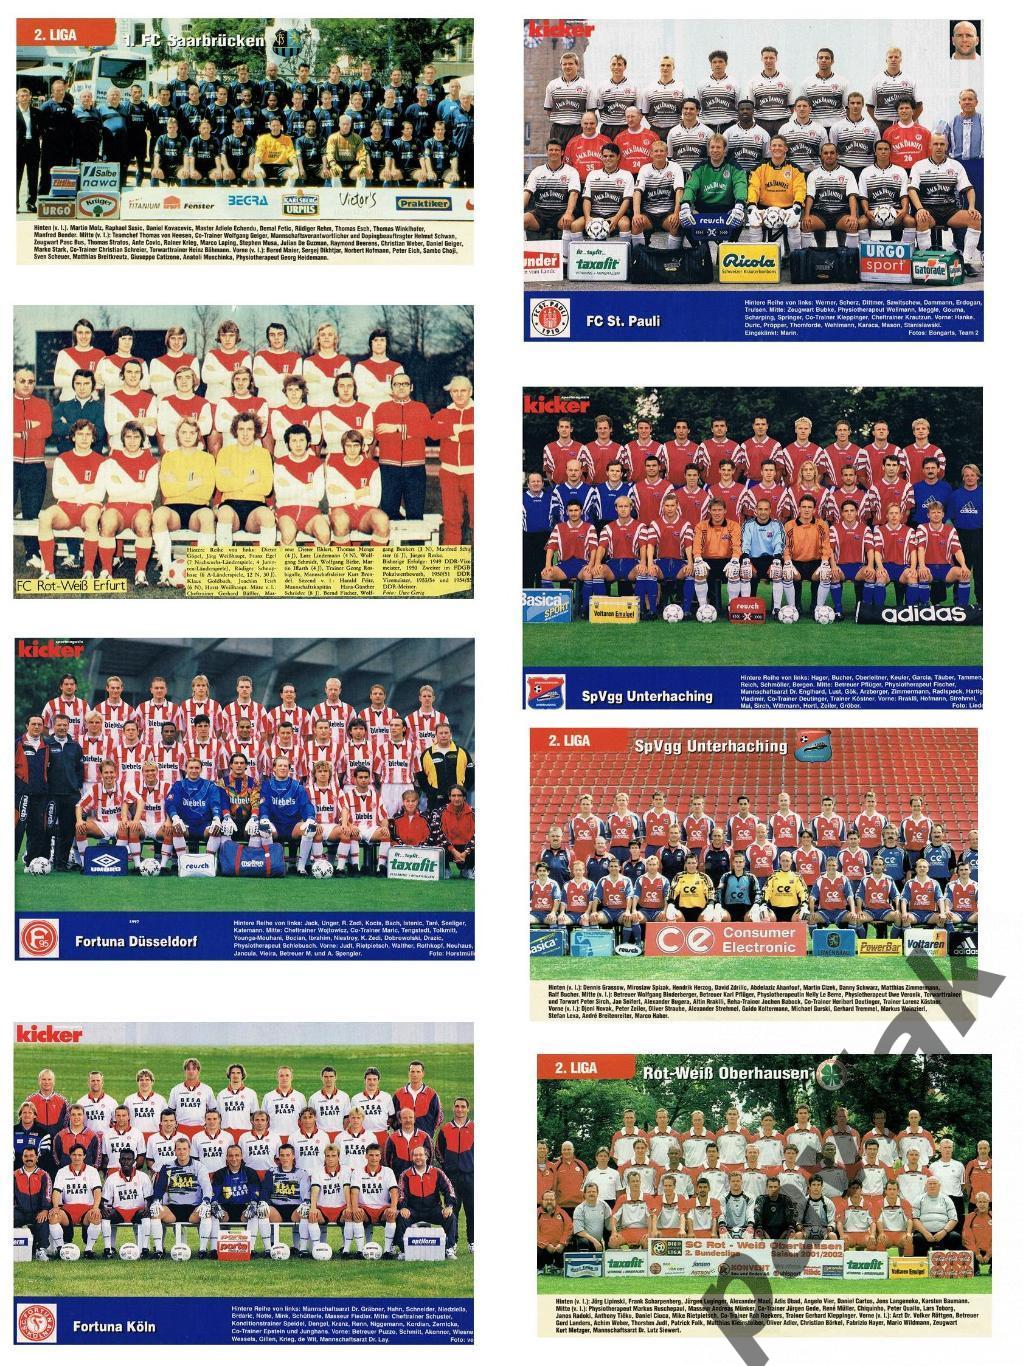 Постеры немецких клубов разных лет из журналов Kicker, Sport bild и NBI 43 шт. 3